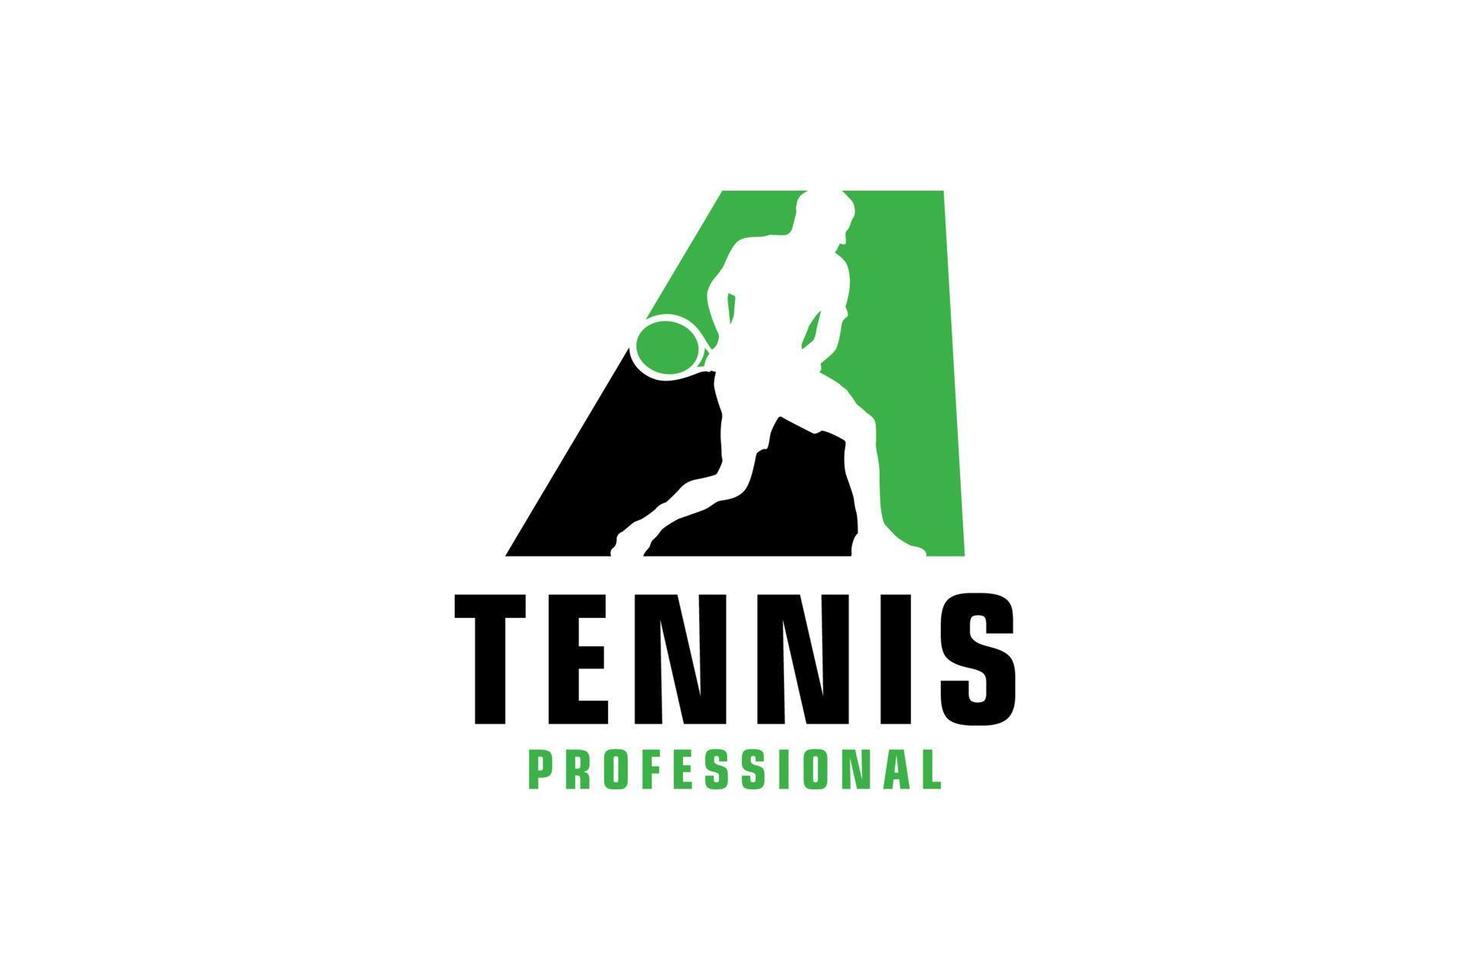 buchstabe a mit tennisspieler-silhouette-logo-design. Vektordesign-Vorlagenelemente für Sportteams oder Corporate Identity. vektor